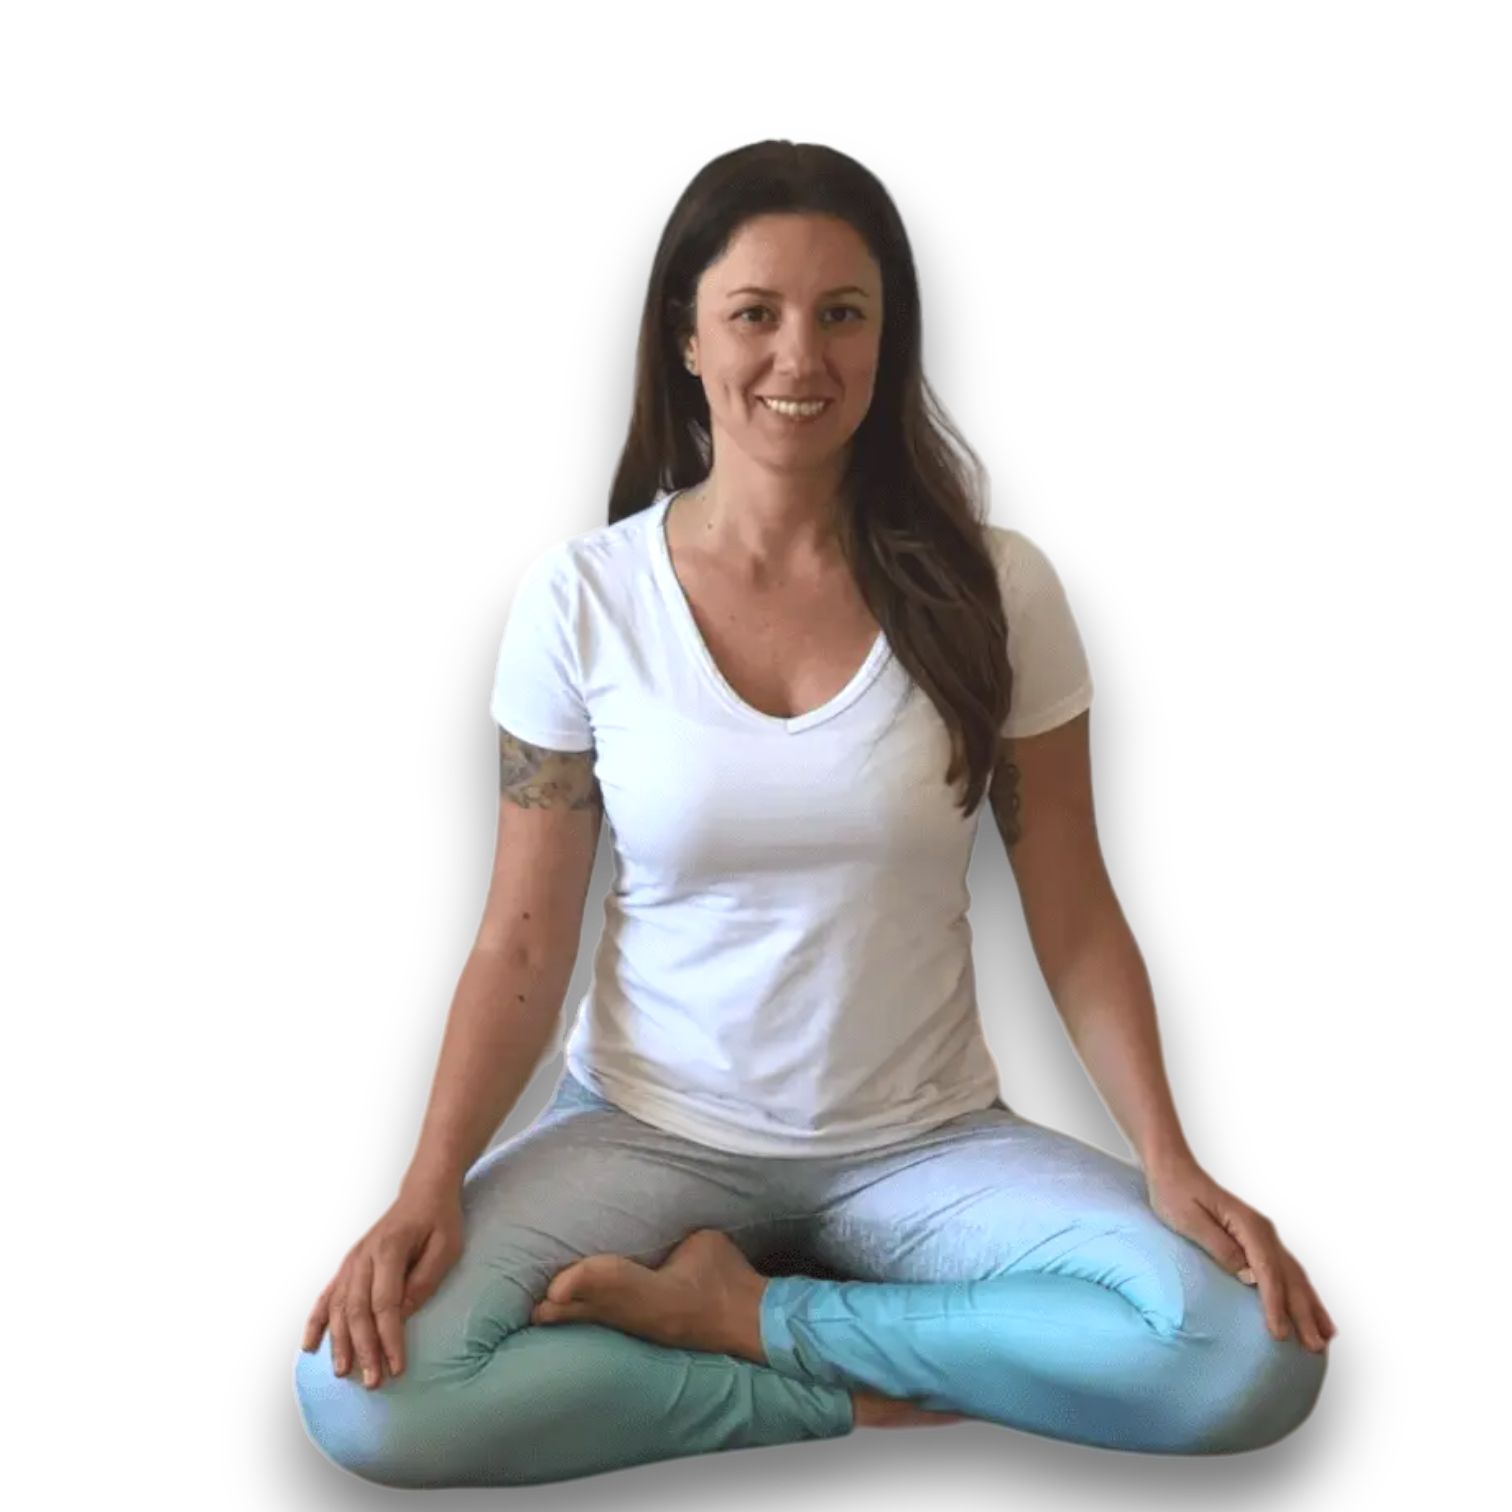 Afill bem com os outros Curso on-line Fundamentos da Prática de Yoga Com Thais Dalla Zanna